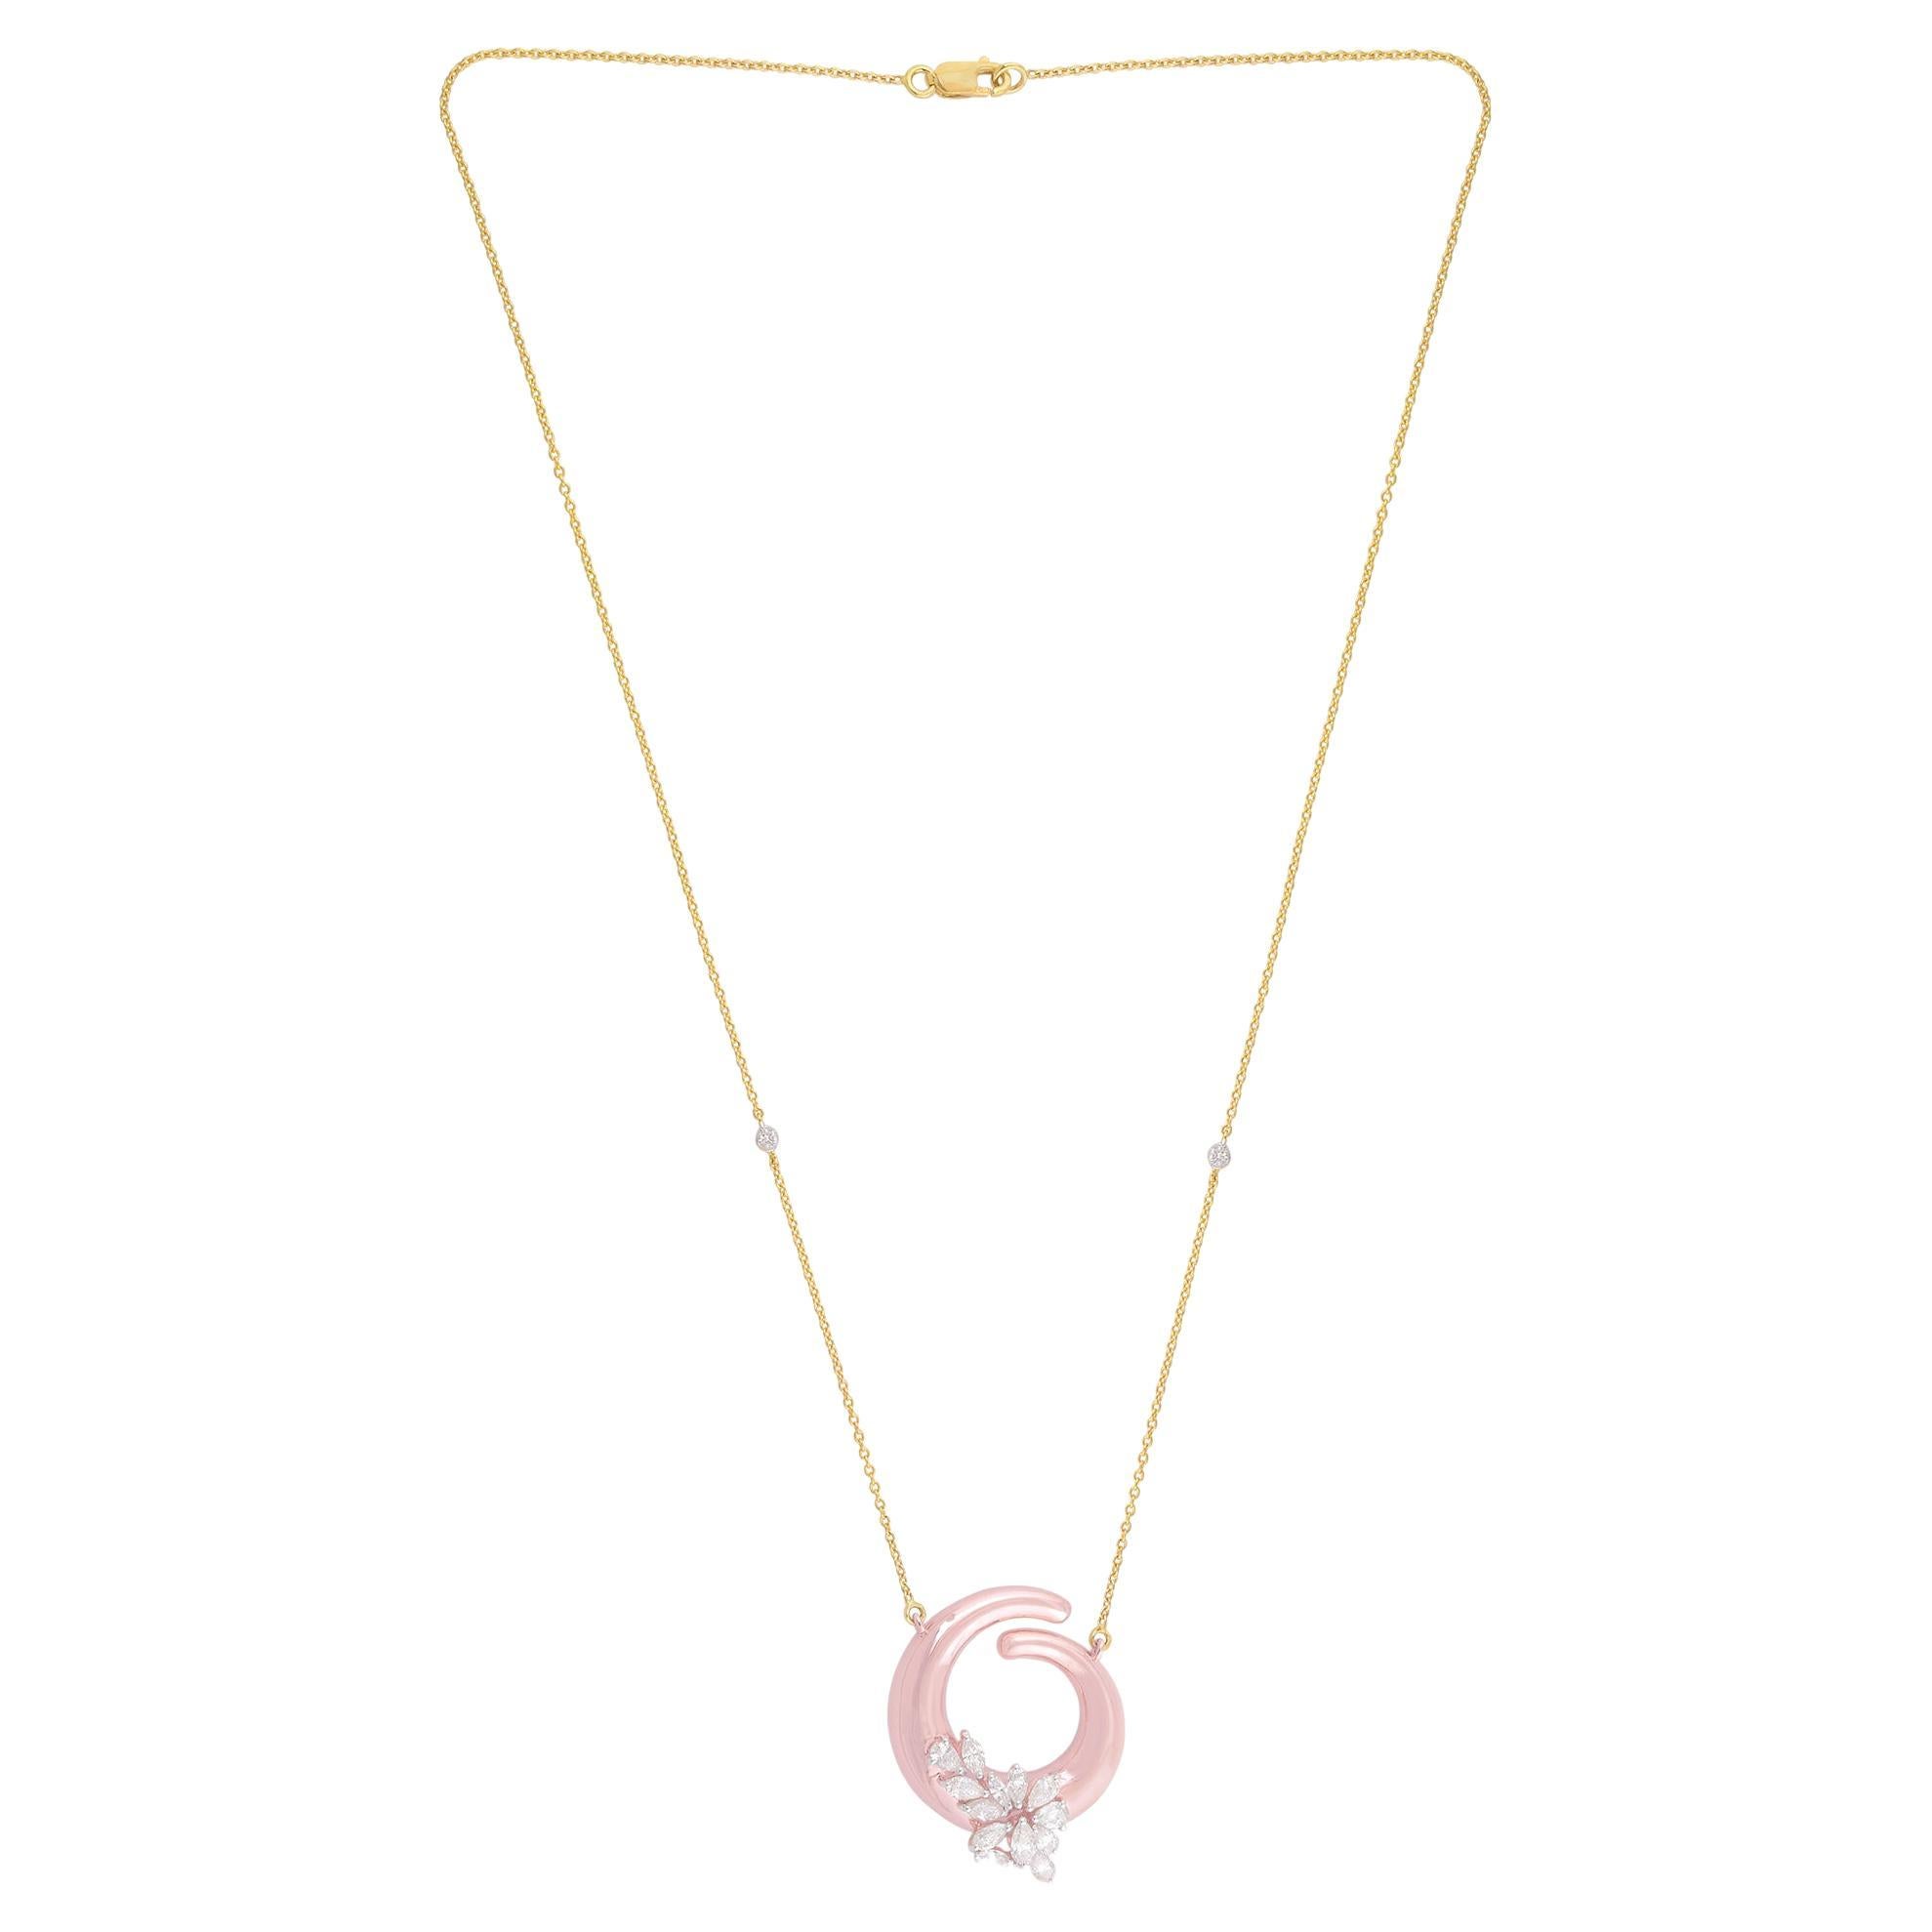 1.45 Carat SI Clarity HI Color Diamond Pendant Fine Necklace Solid 18k Rose Gold